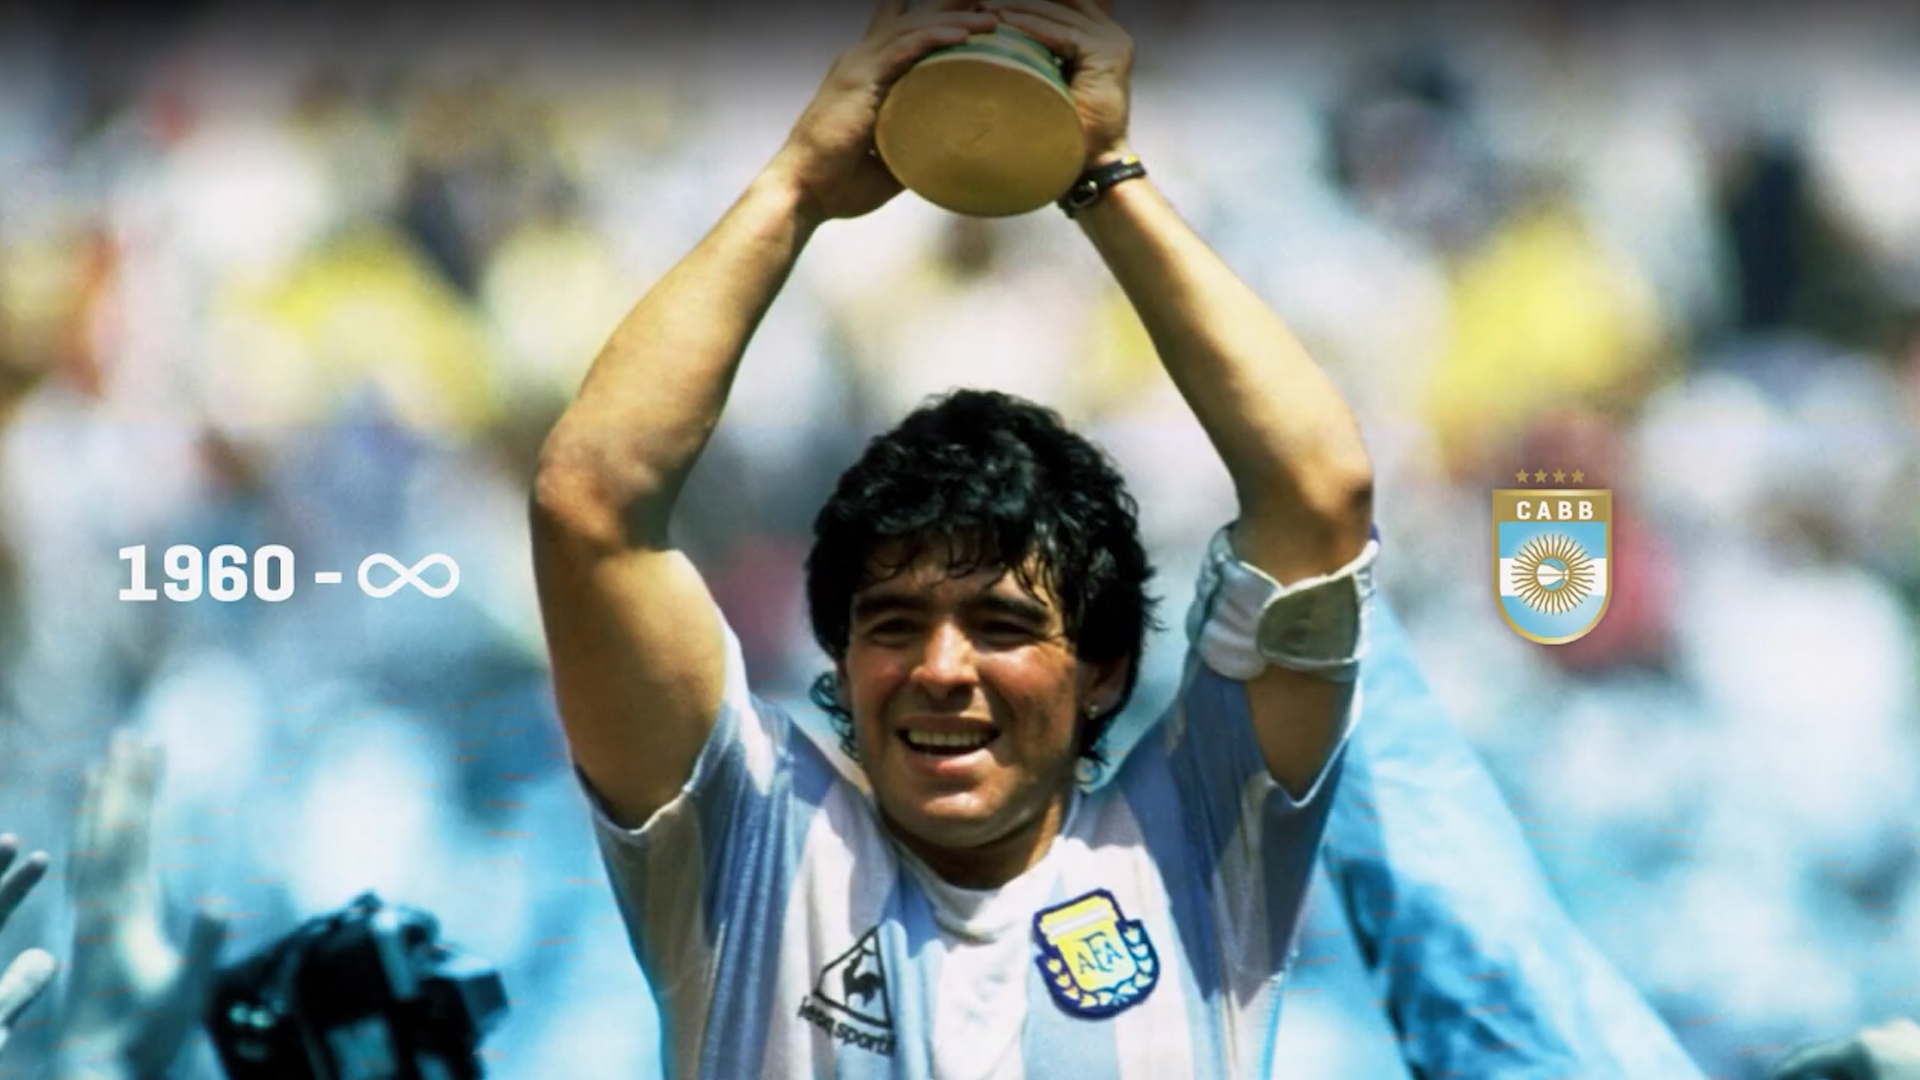 La selección de básquet homenajeó a Maradona: “Fuiste nuestra bandera en el mundo” 